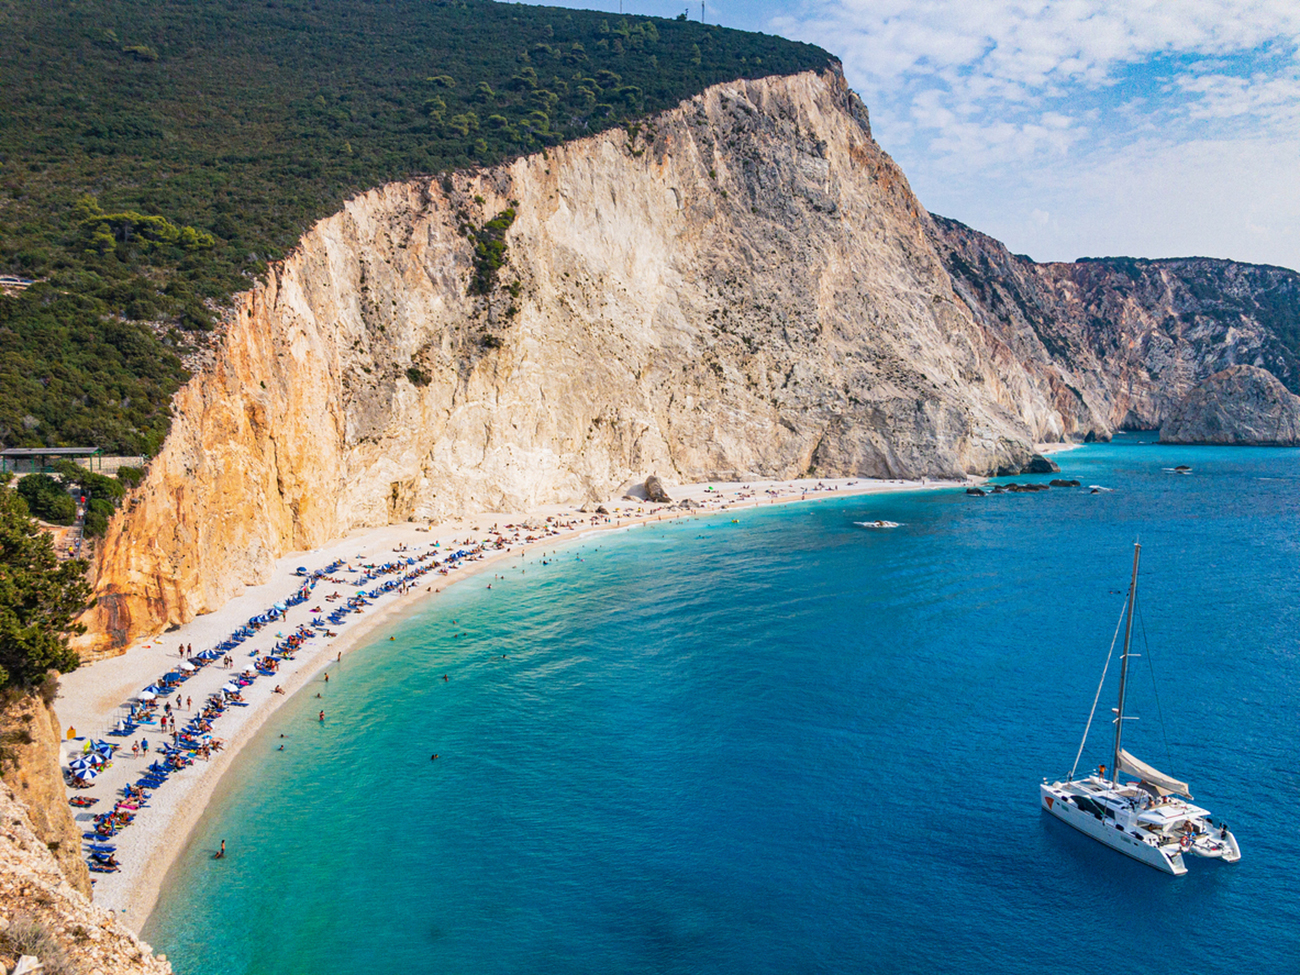 Στην Λευκάδα θα βρεις από τις πιο εντυπωσιακές παραλίες της Ελλάδας – Δείτε φωτογραφίες